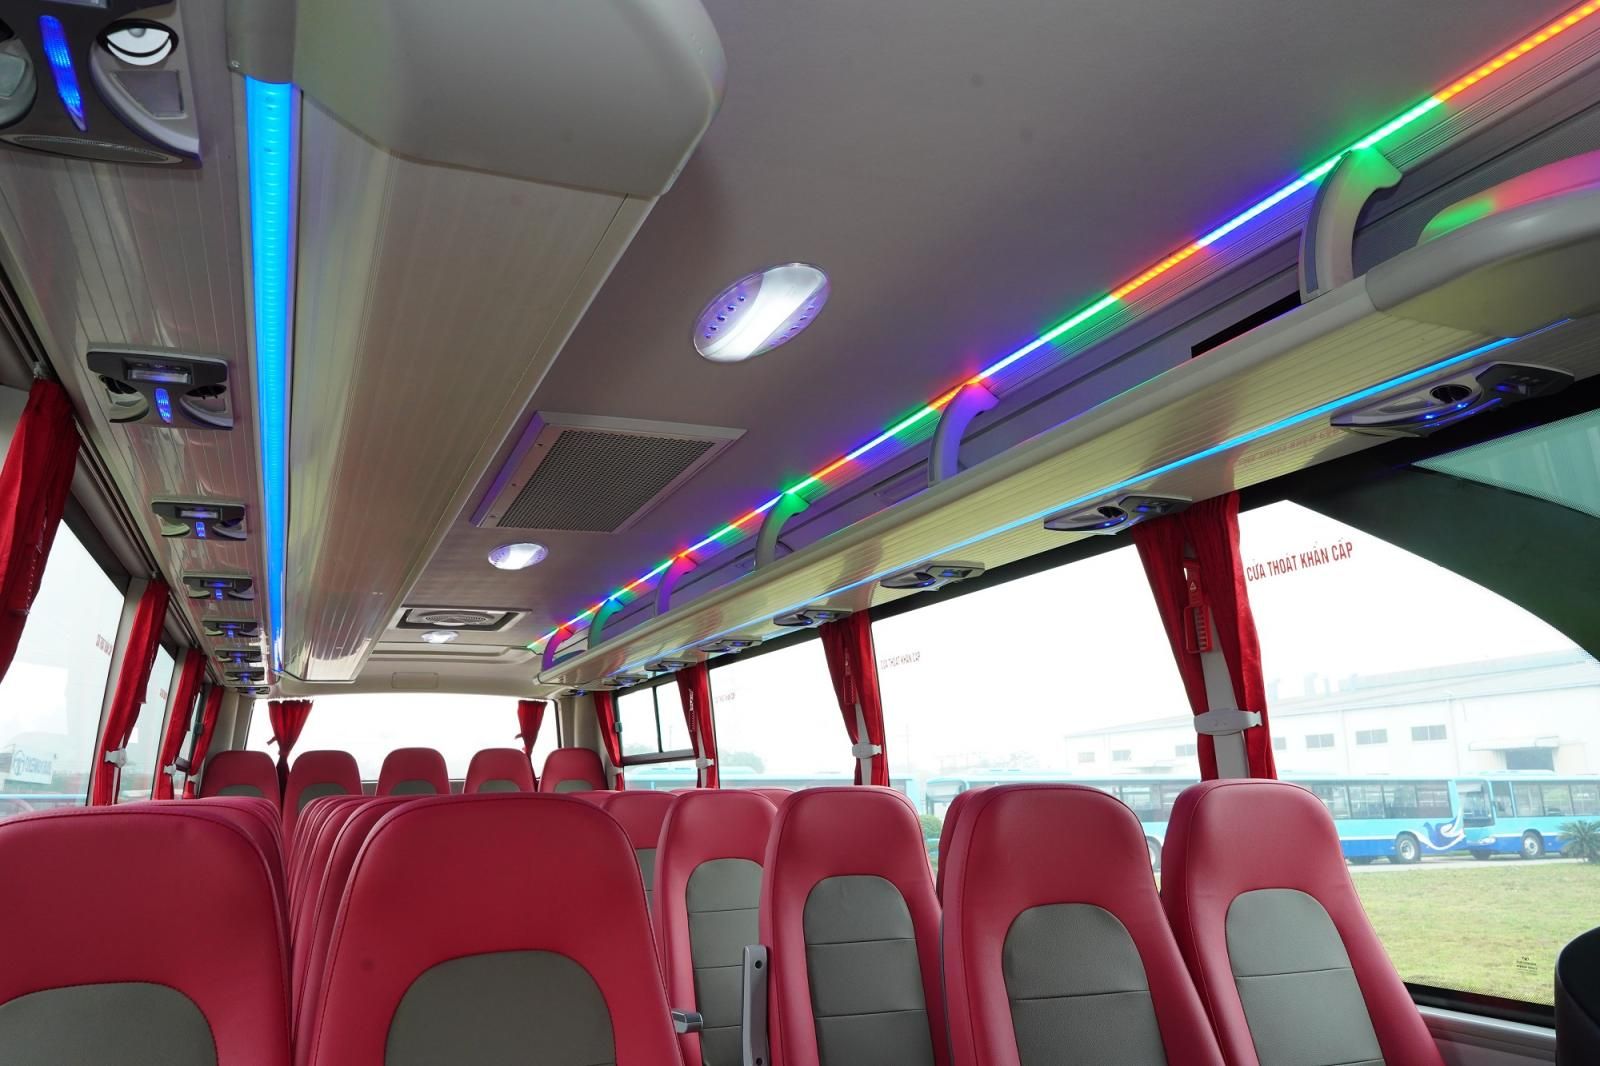 Daewoo Bus 0 2021 - Bán xe khách 34 chỗ ngồi Daewoo Model G8 Global Star